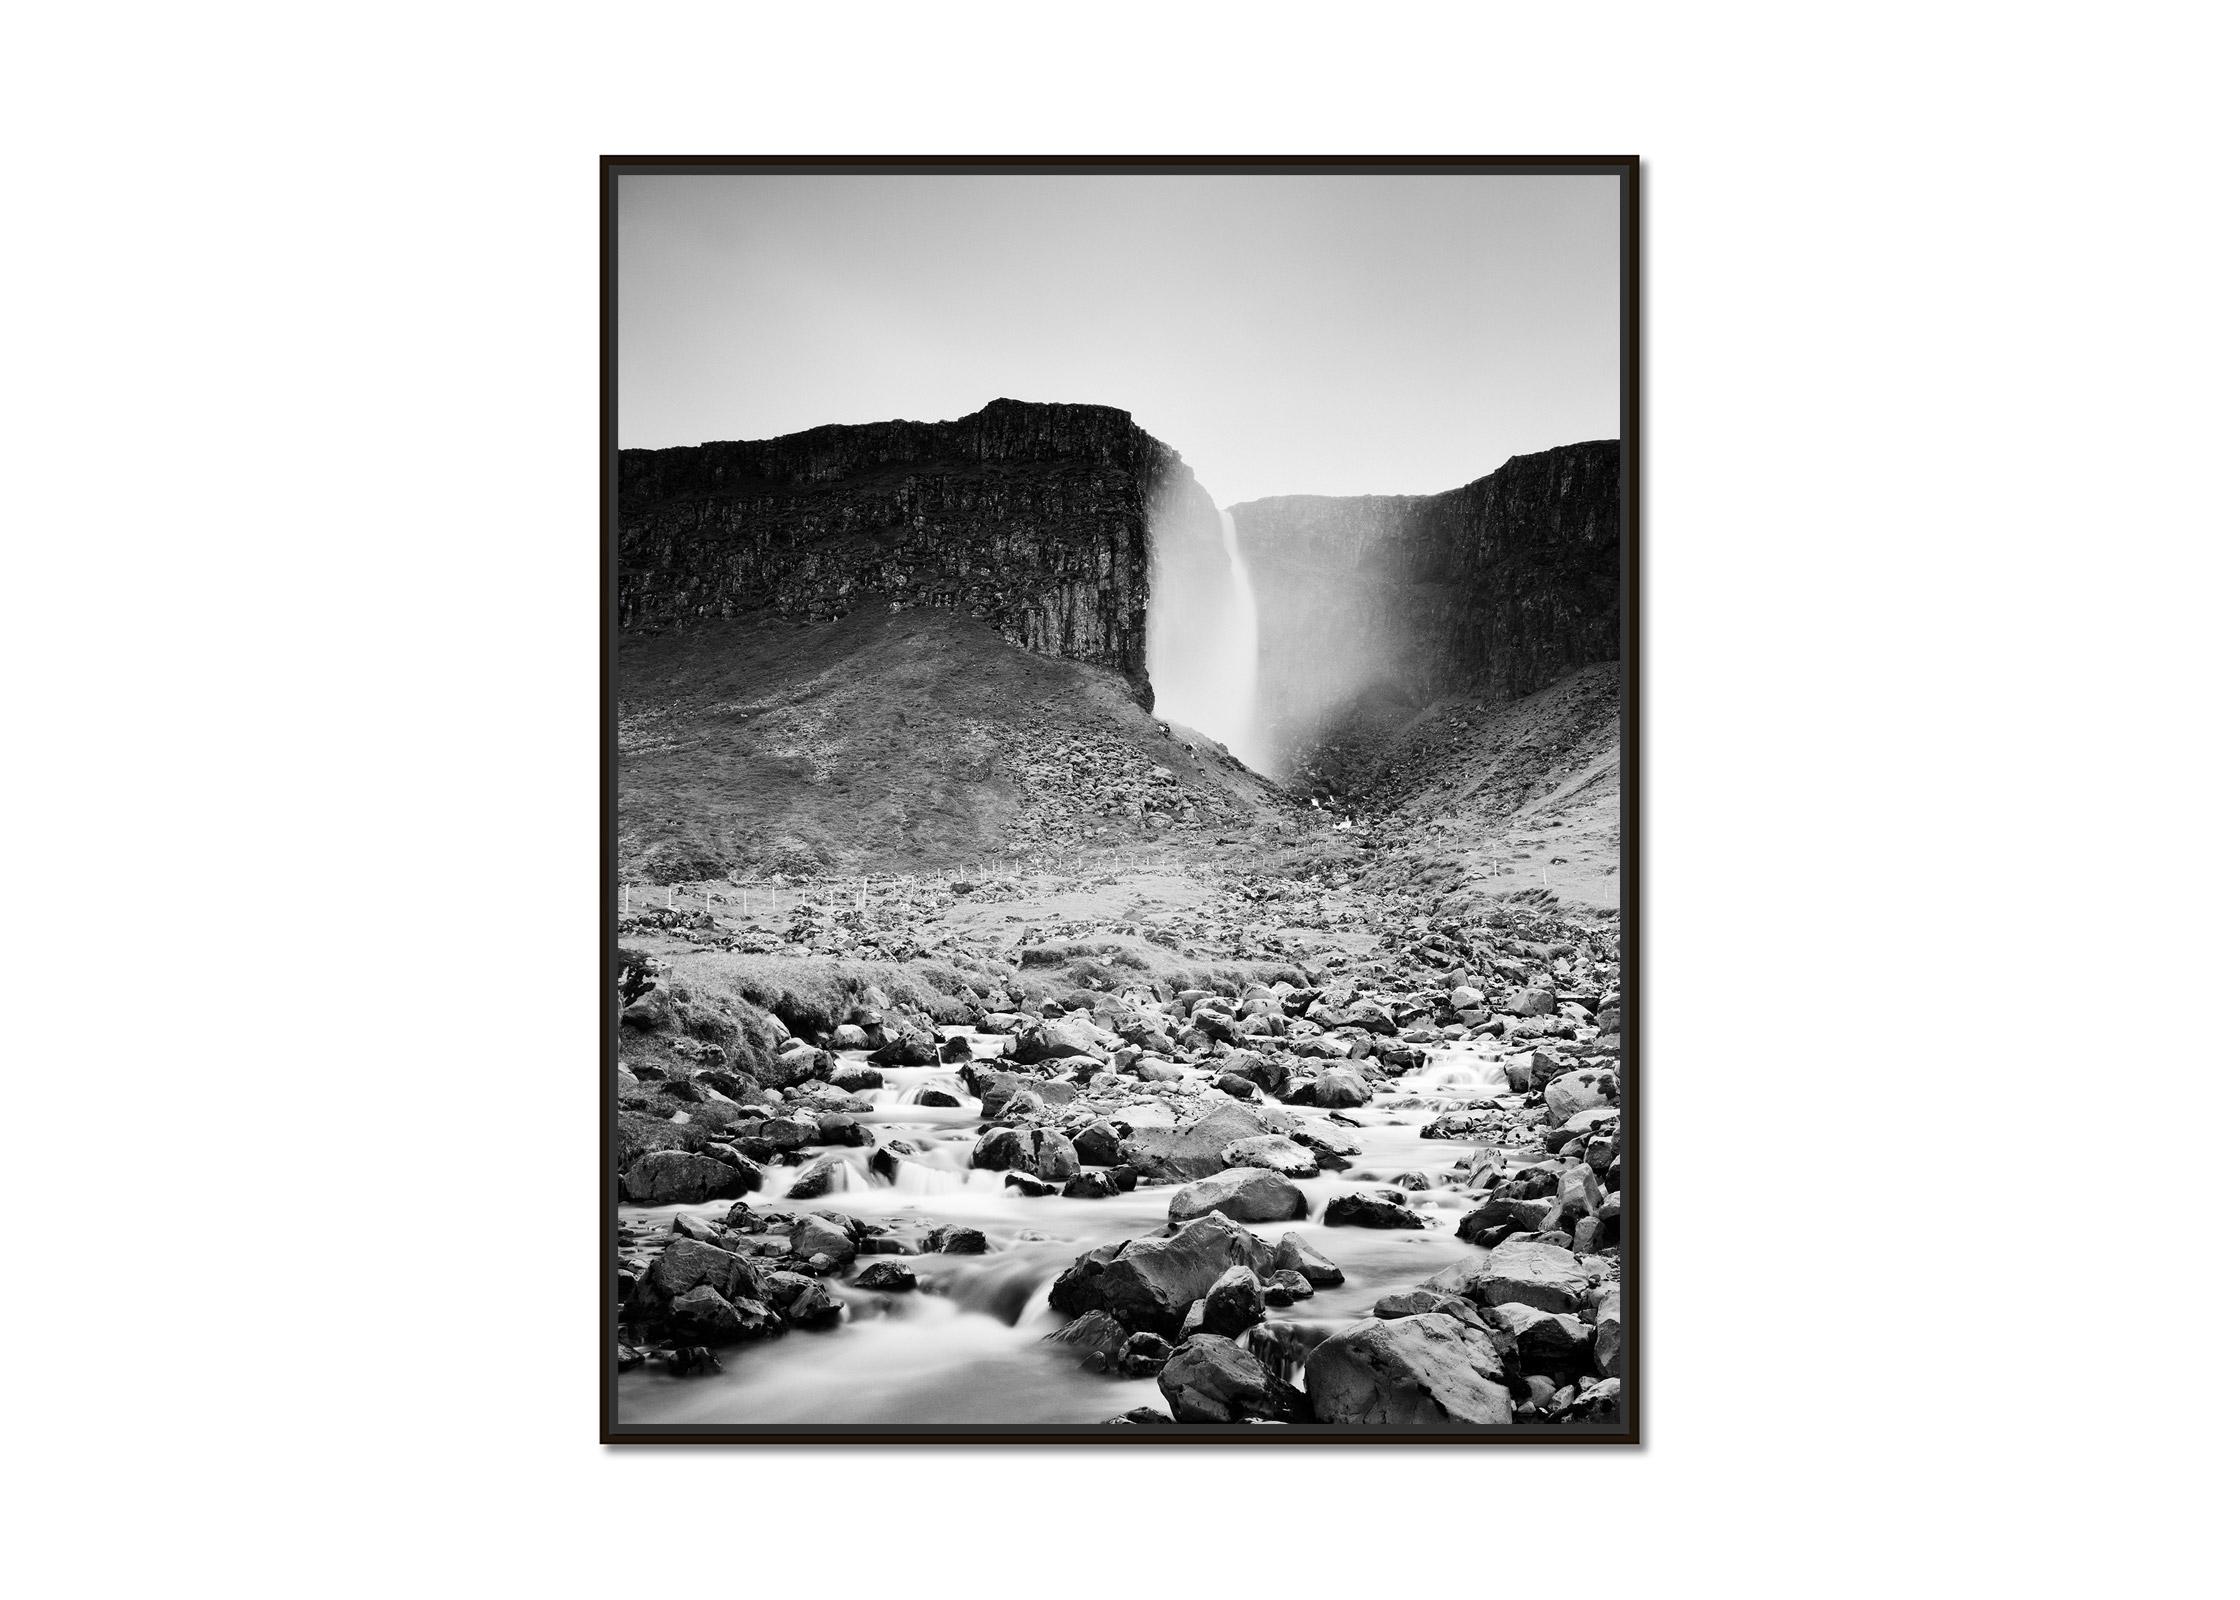 Foss, Waterfall, Mountain Stream, Iceland, b&w fine art, landspace photography - Contemporain Photograph par Gerald Berghammer